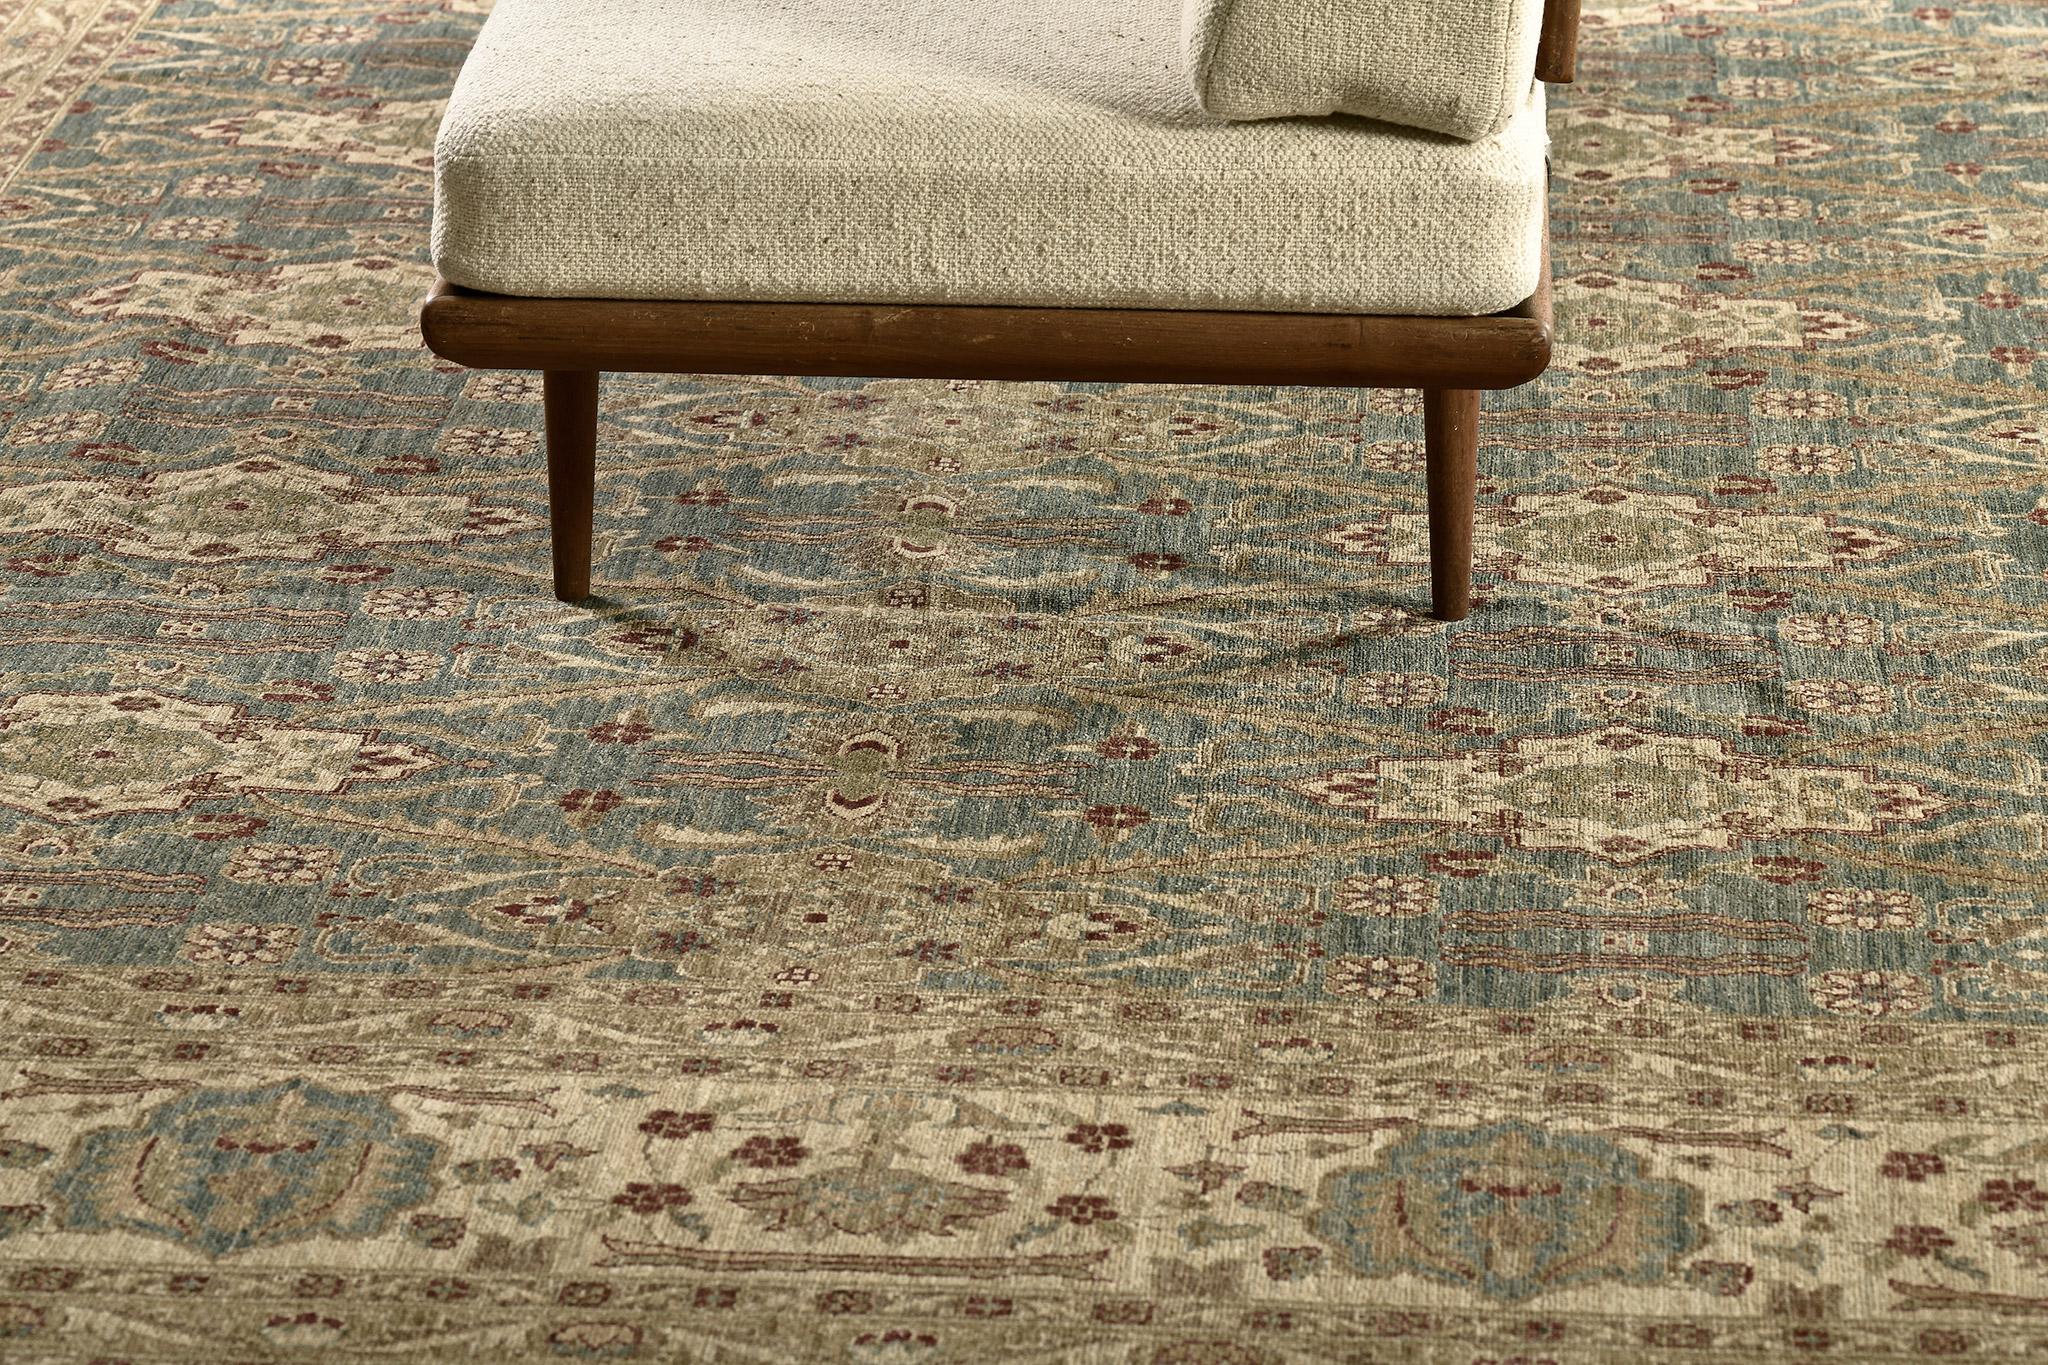 Laissez-vous séduire par ce tapis Agra qui présente un design aux tons terreux qui complète les motifs. On y trouve des séries de volutes et de vrilles, de fleurons et de médaillons symétriquement feuillus. Parfait pour l'intérieur de votre maison